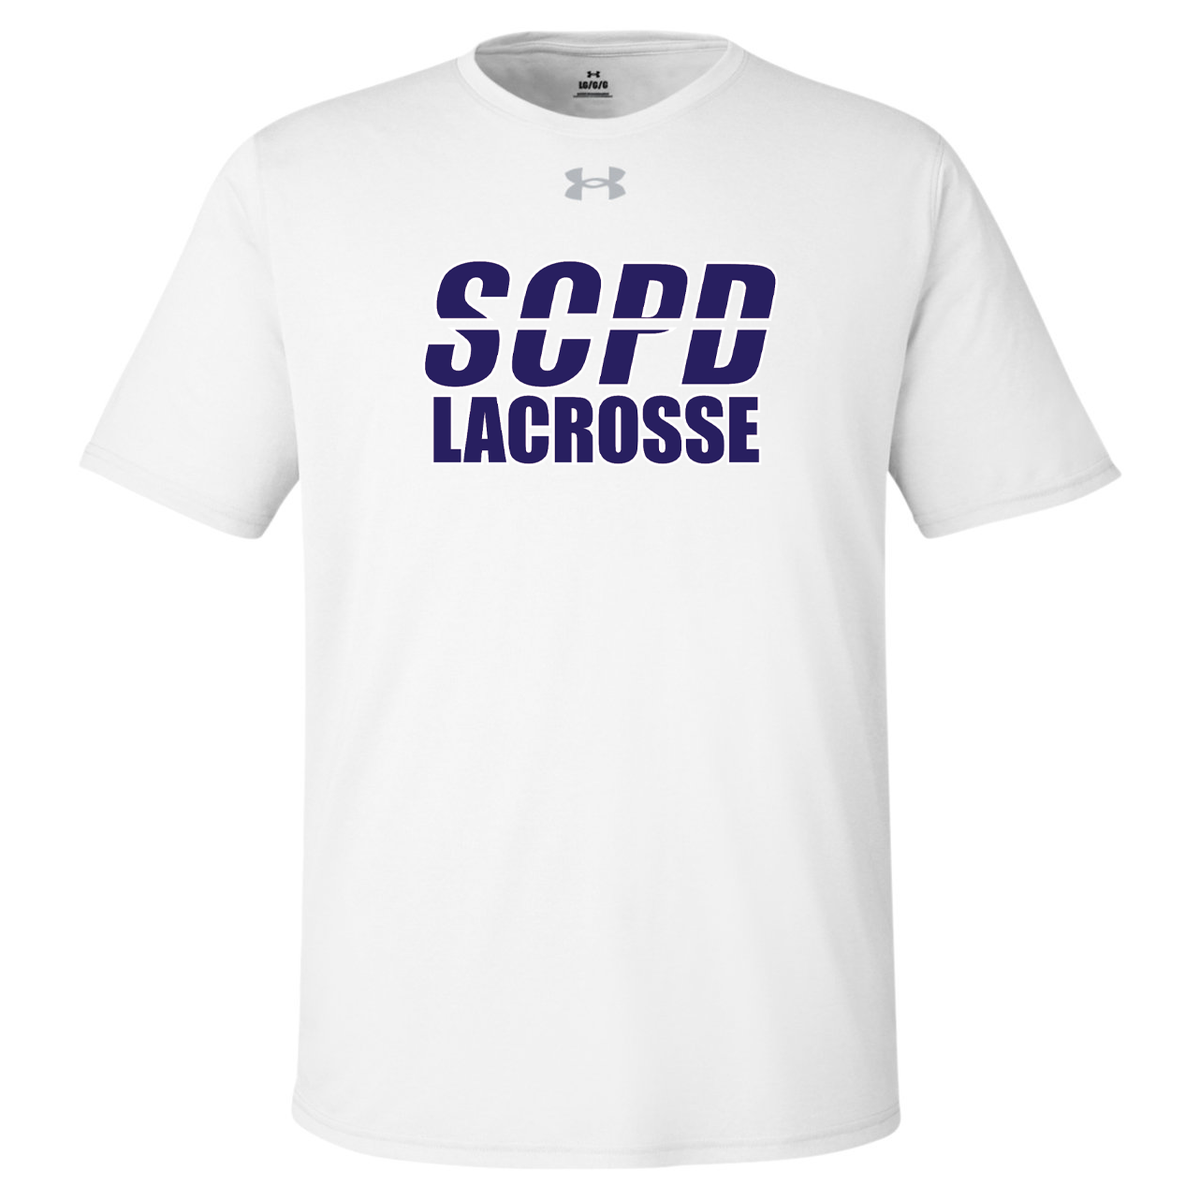 SCPD Lacrosse Under Armour Men's Team Tech T-Shirt